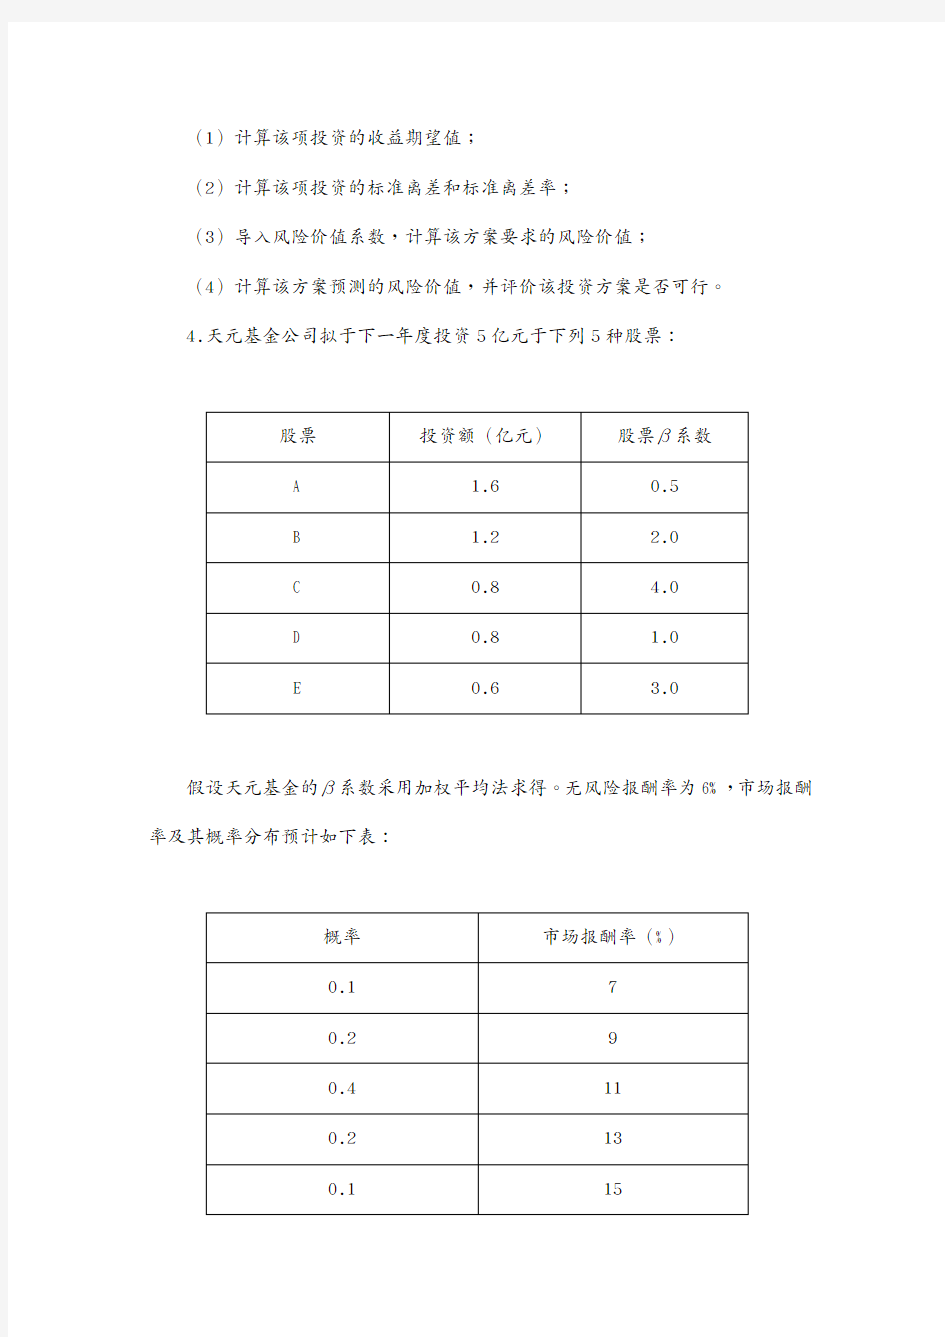 (现场管理)湘潭大学财务管理财务管理作业